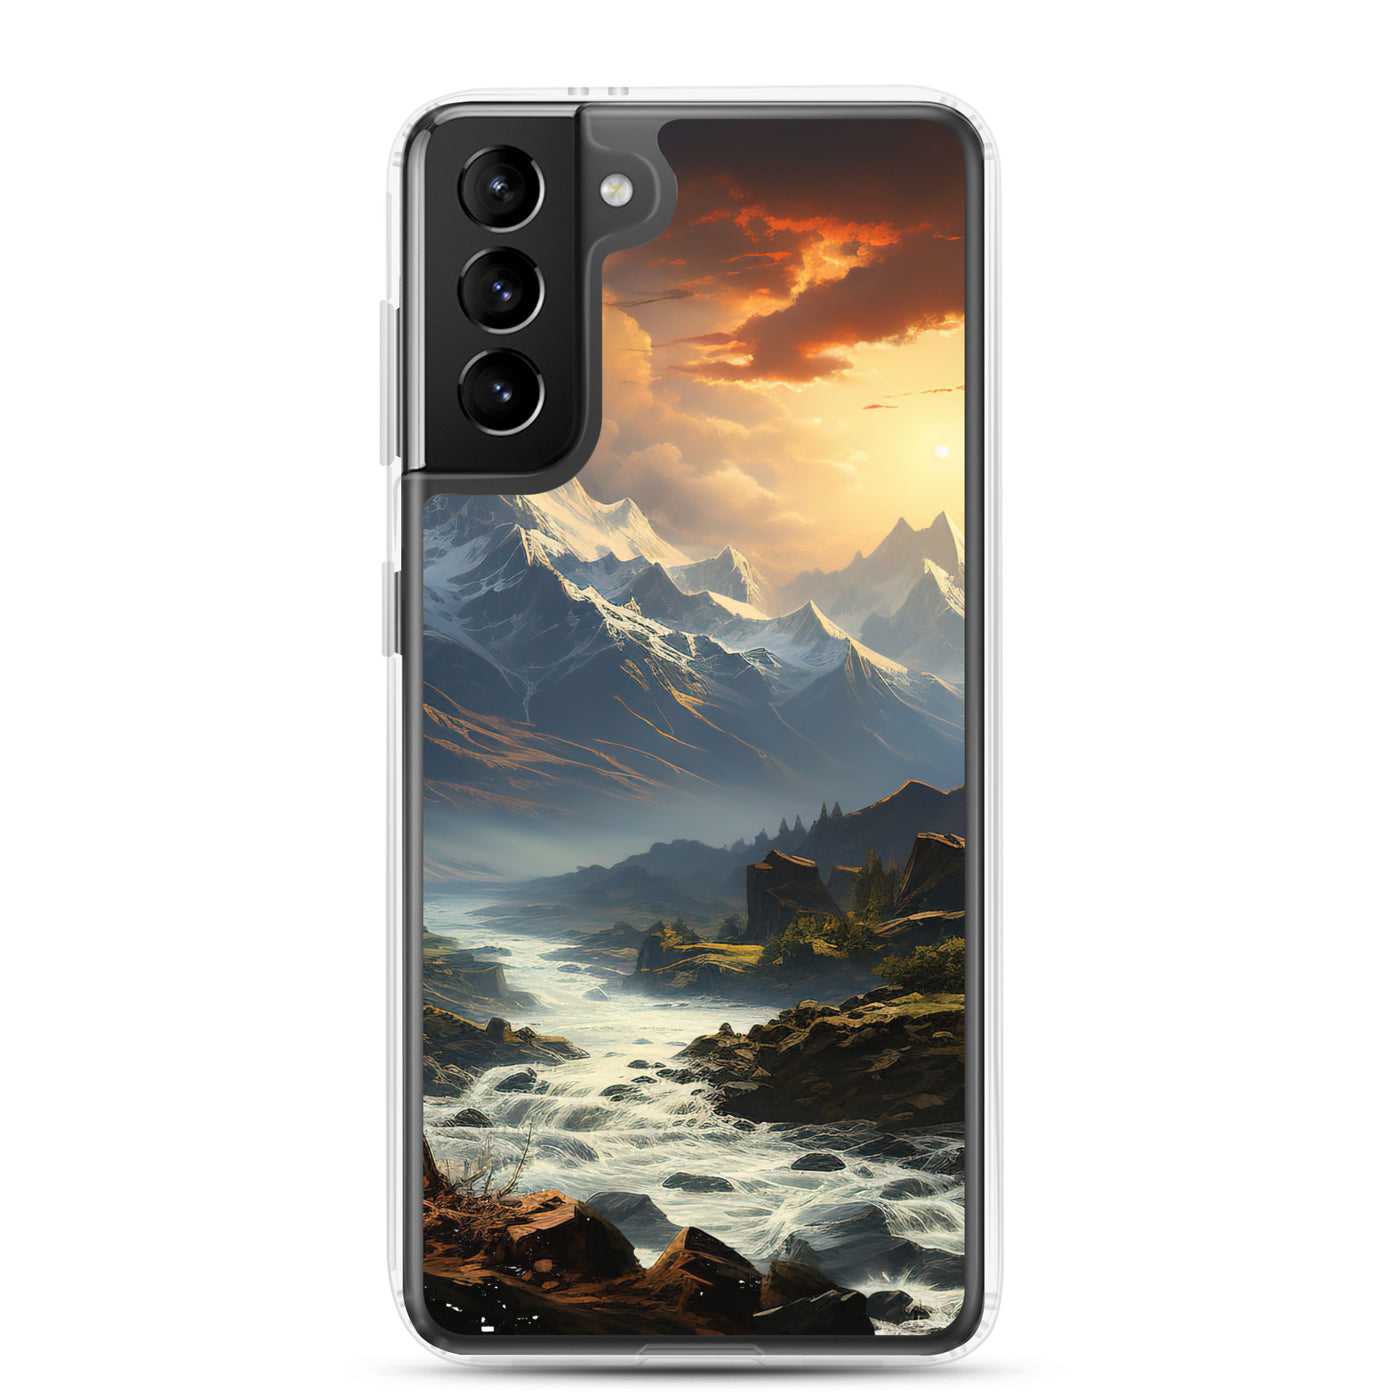 Berge, Sonne, steiniger Bach und Wolken - Epische Stimmung - Samsung Schutzhülle (durchsichtig) berge xxx Samsung Galaxy S21 Plus